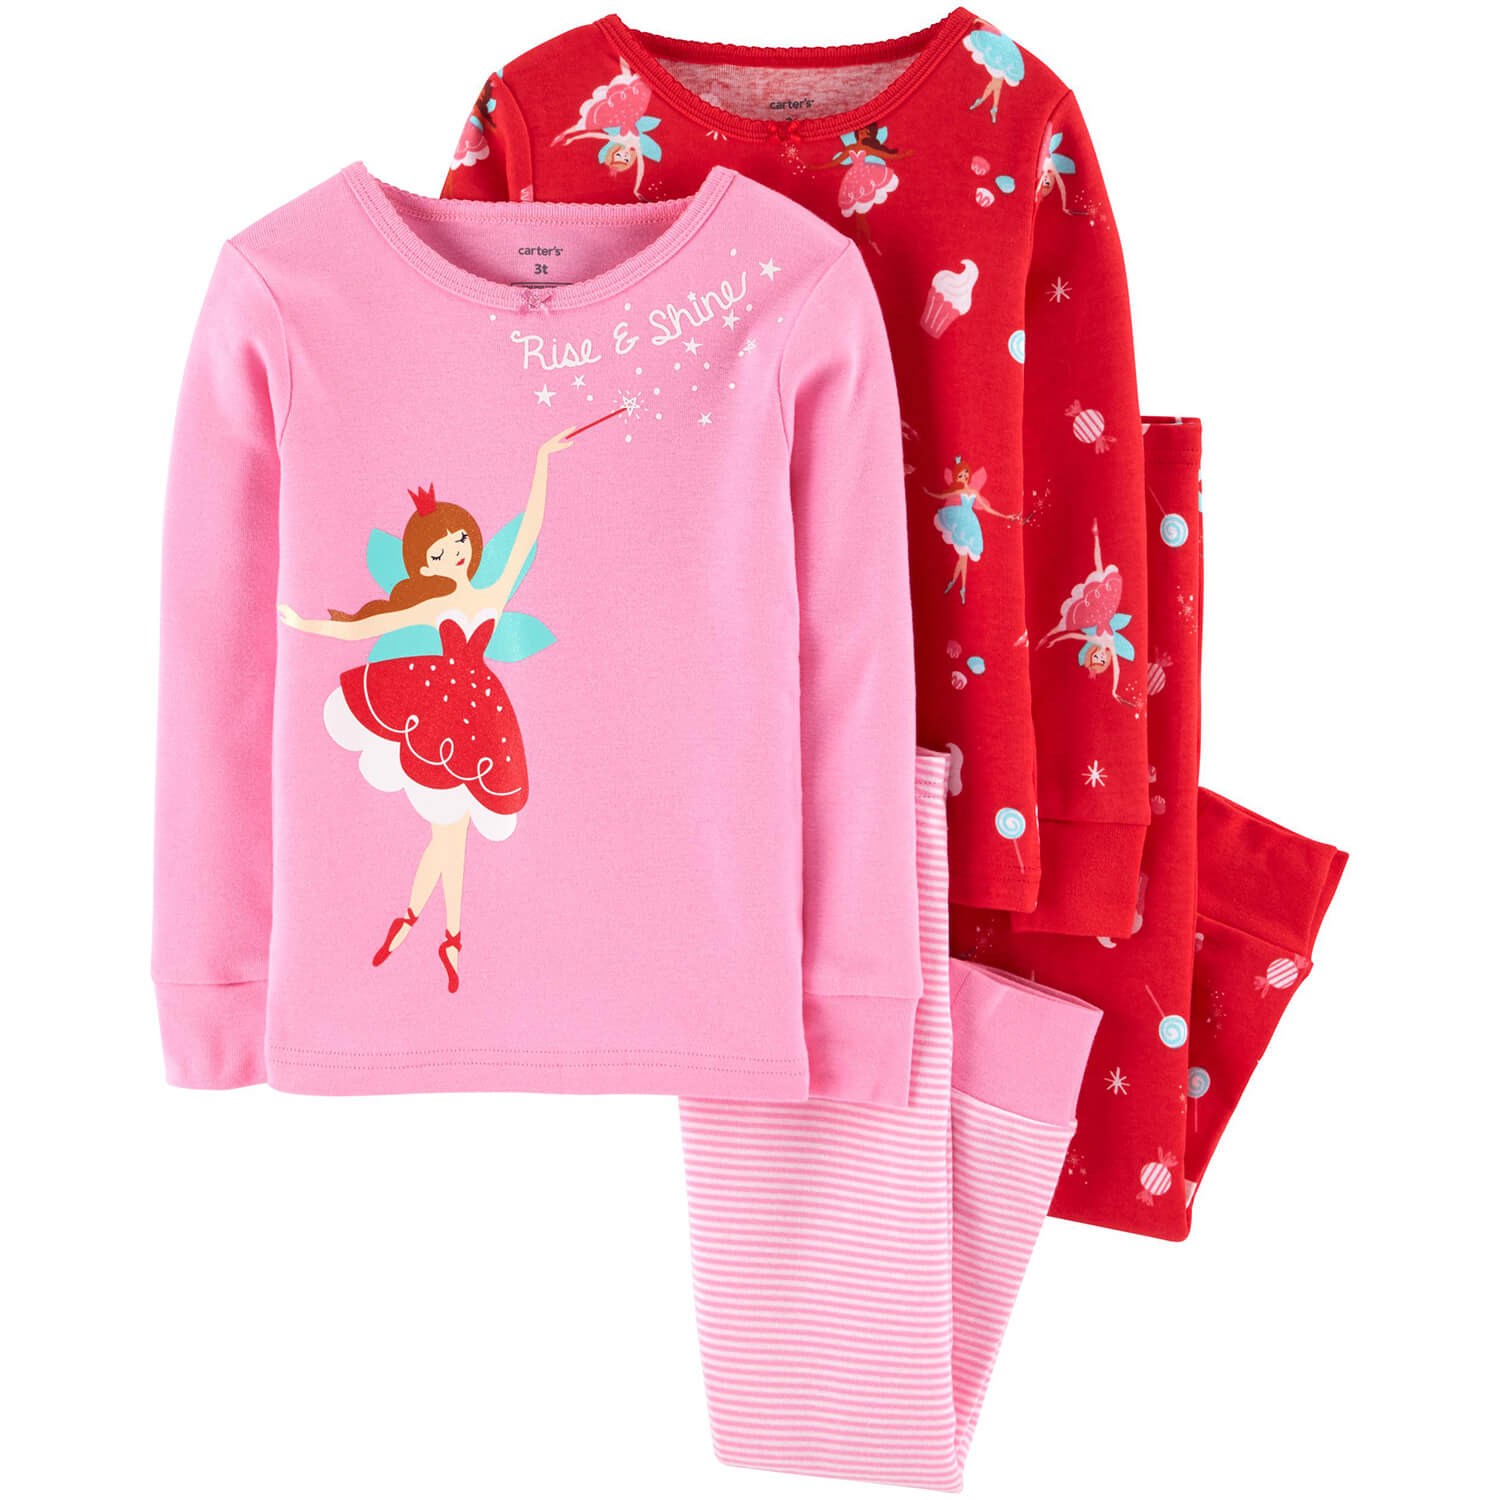 Carter's Balerin 4'lü Çocuk Pijama Takımı Pembe-Kırmızı